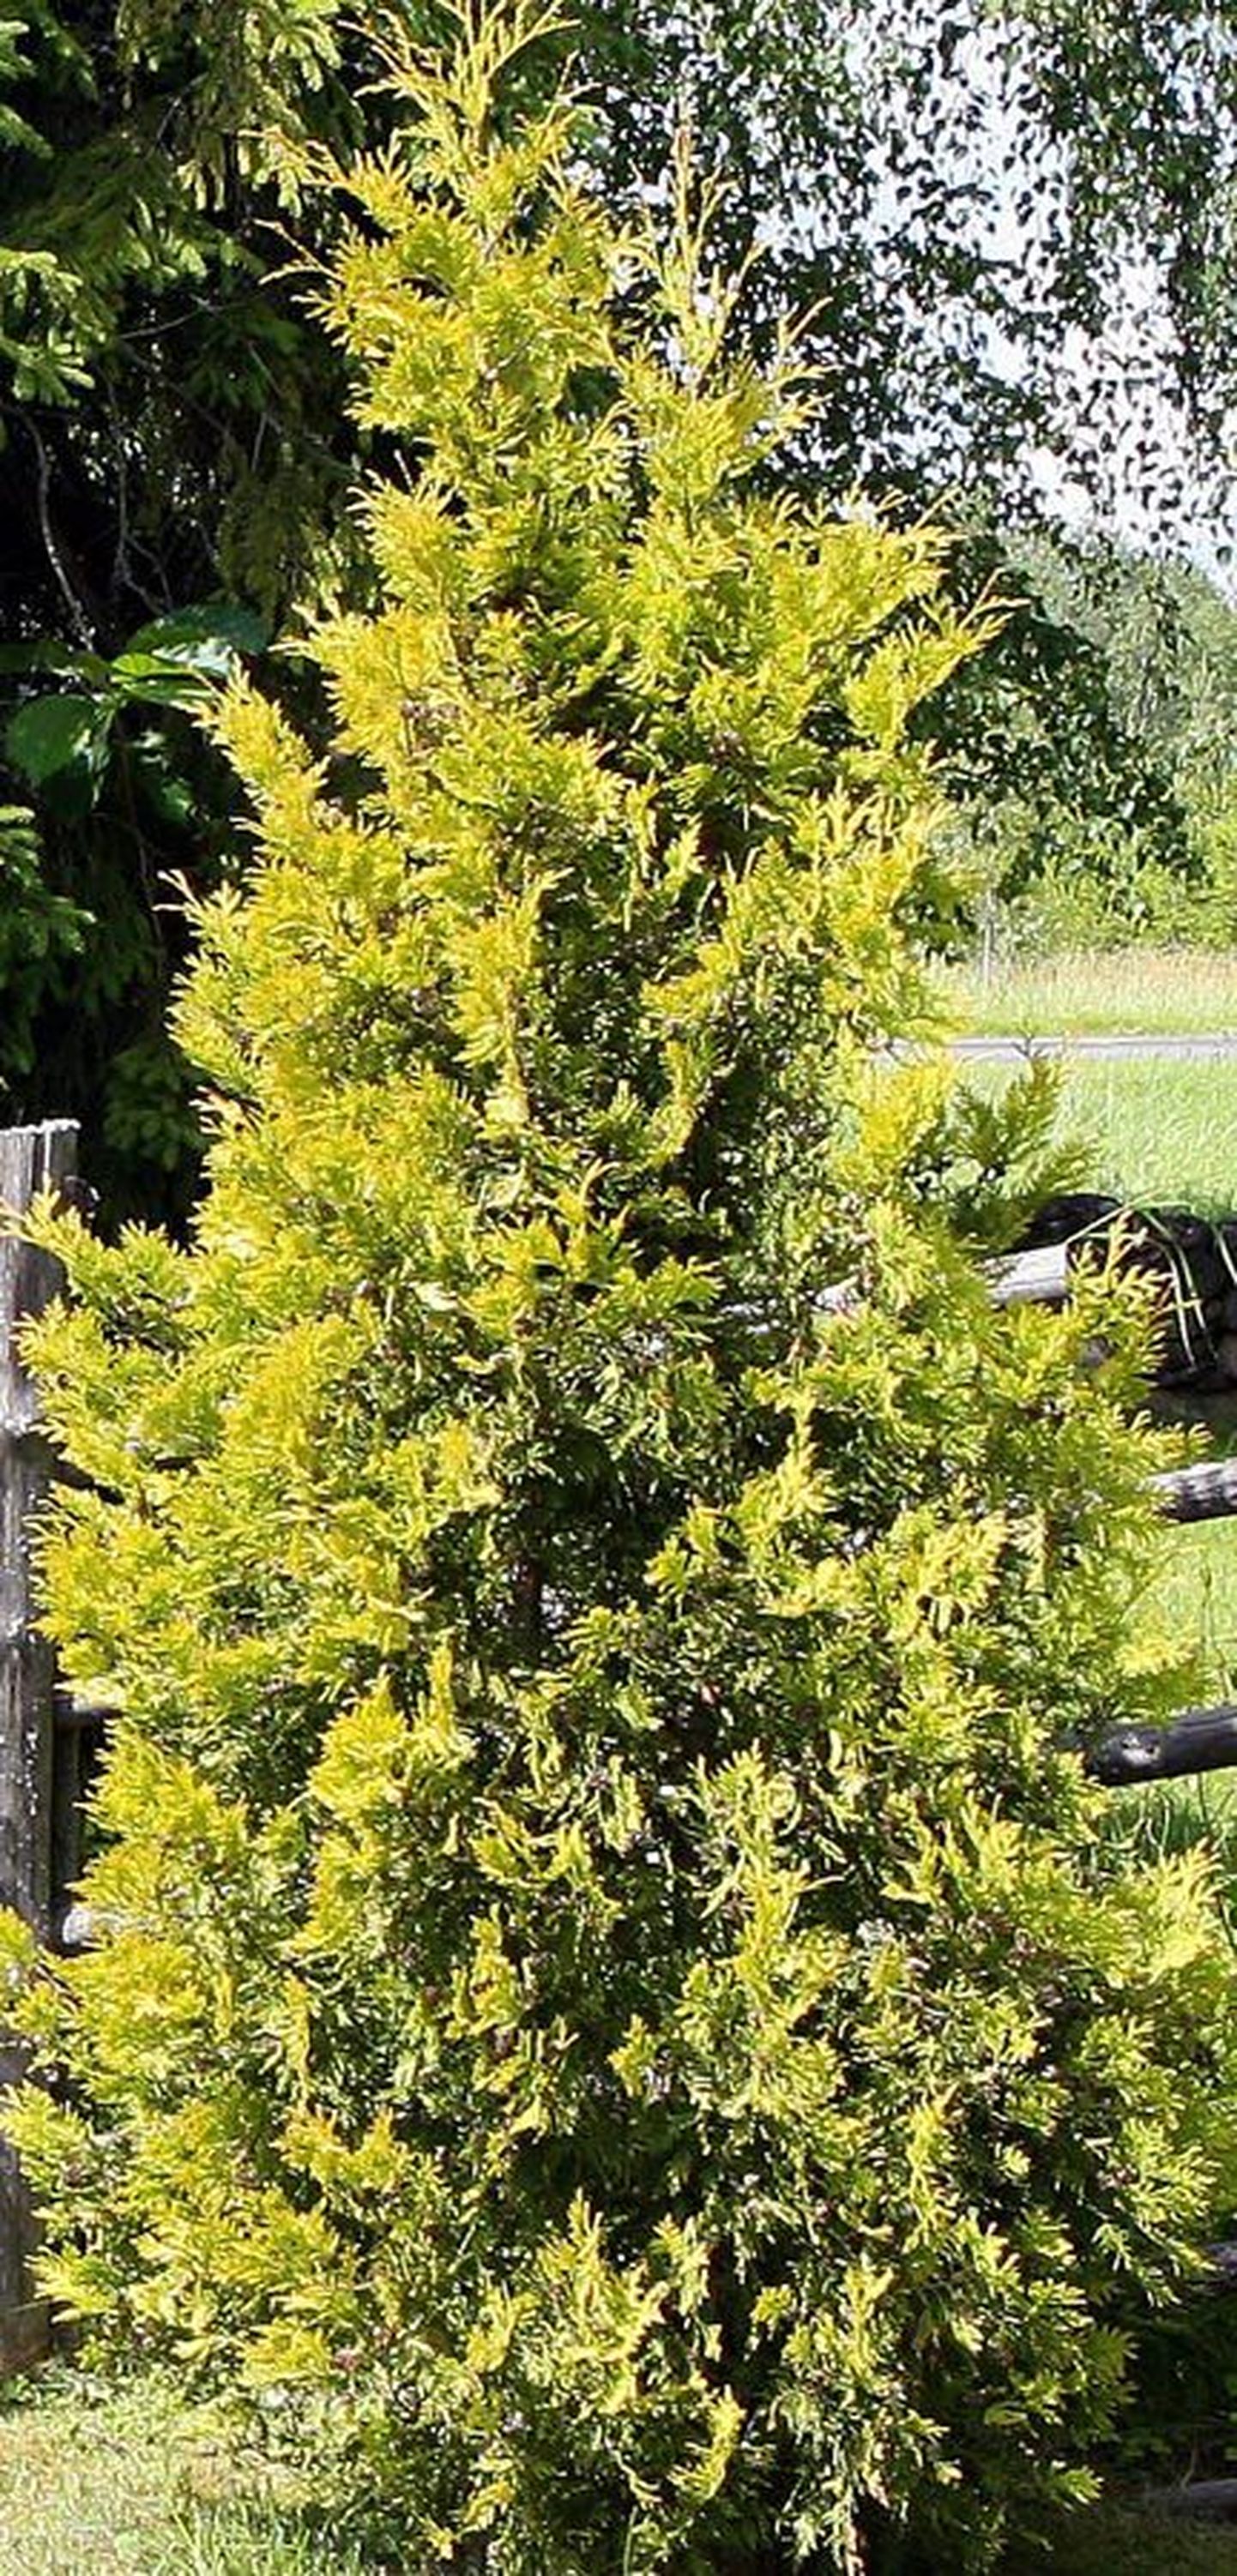 Puumatuse istikuks saab valida kõiki puid, mis Eestis kasvavad ja mis ei ole haigustele väga vastuvõtlikud. Pildil on elupuu.